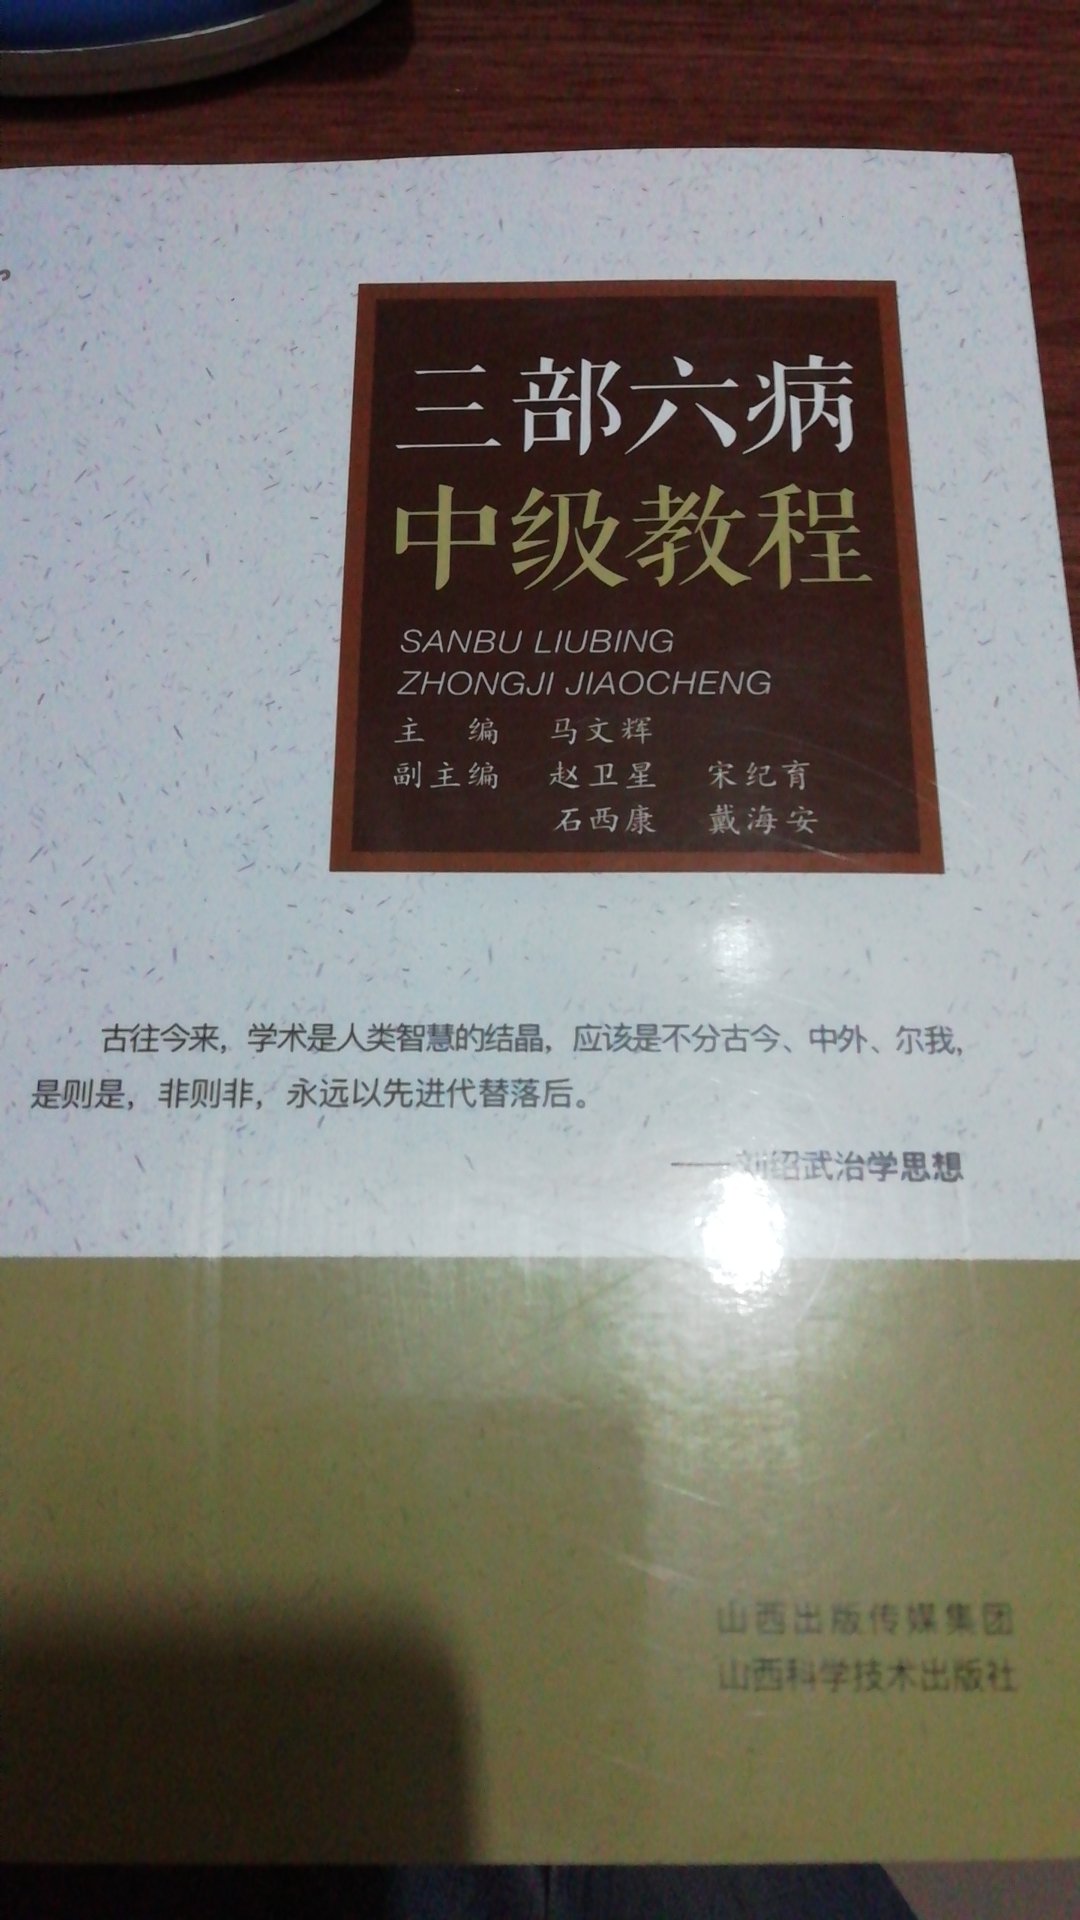 三部六病中级教程一书是学习名老中医刘绍武三部六病学说后中级教材，讲述了三部六病特色疗法及常用秘验方。